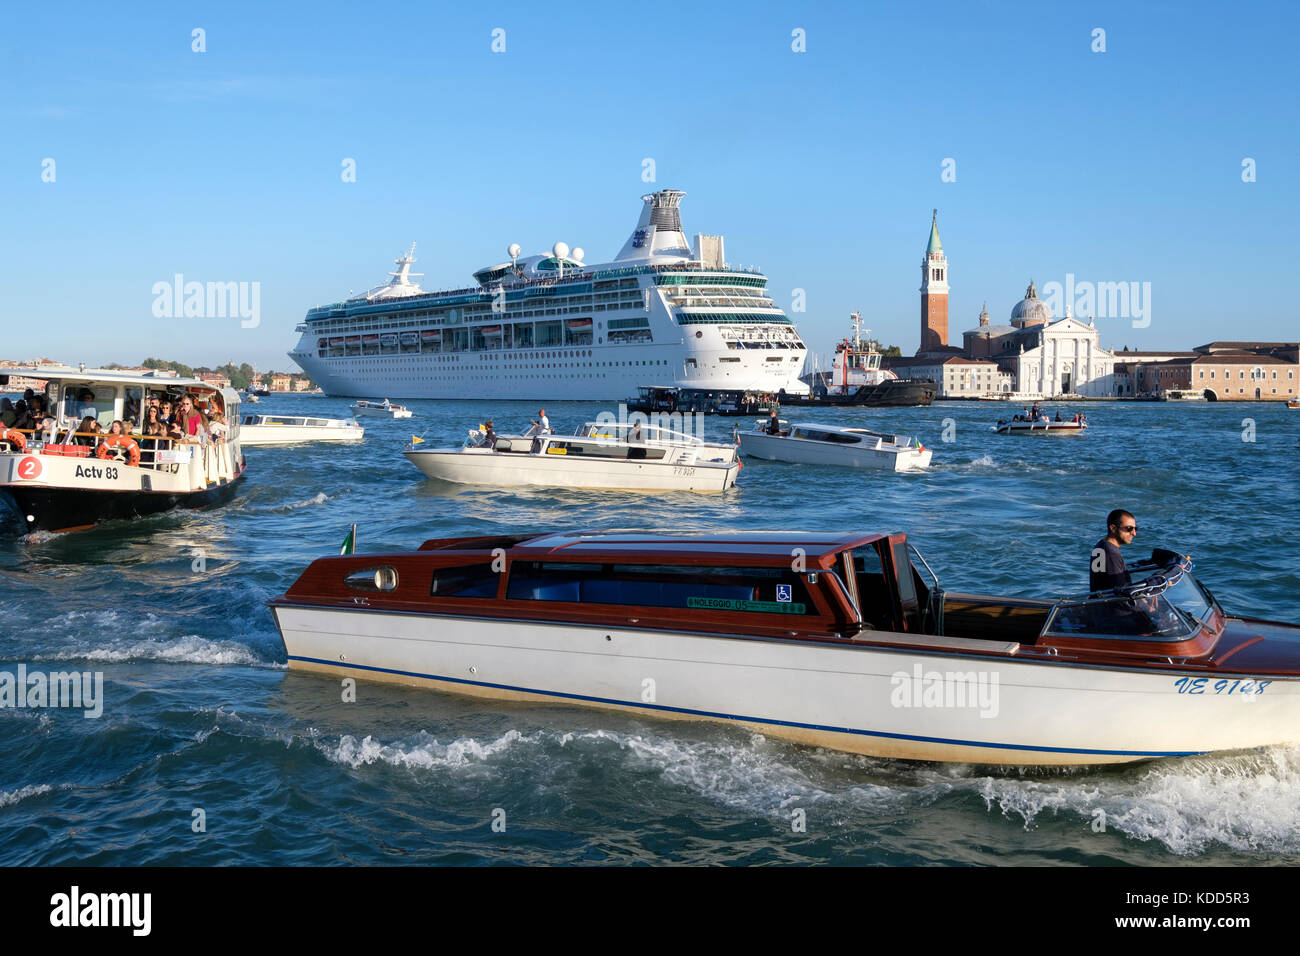 Congestion dans le lagon vénitien alors que le bateau de croisière Royal Caribbean, « Rhapsody of the Seas », passe devant San Giorgio Maggiore. Venise, Ital Banque D'Images